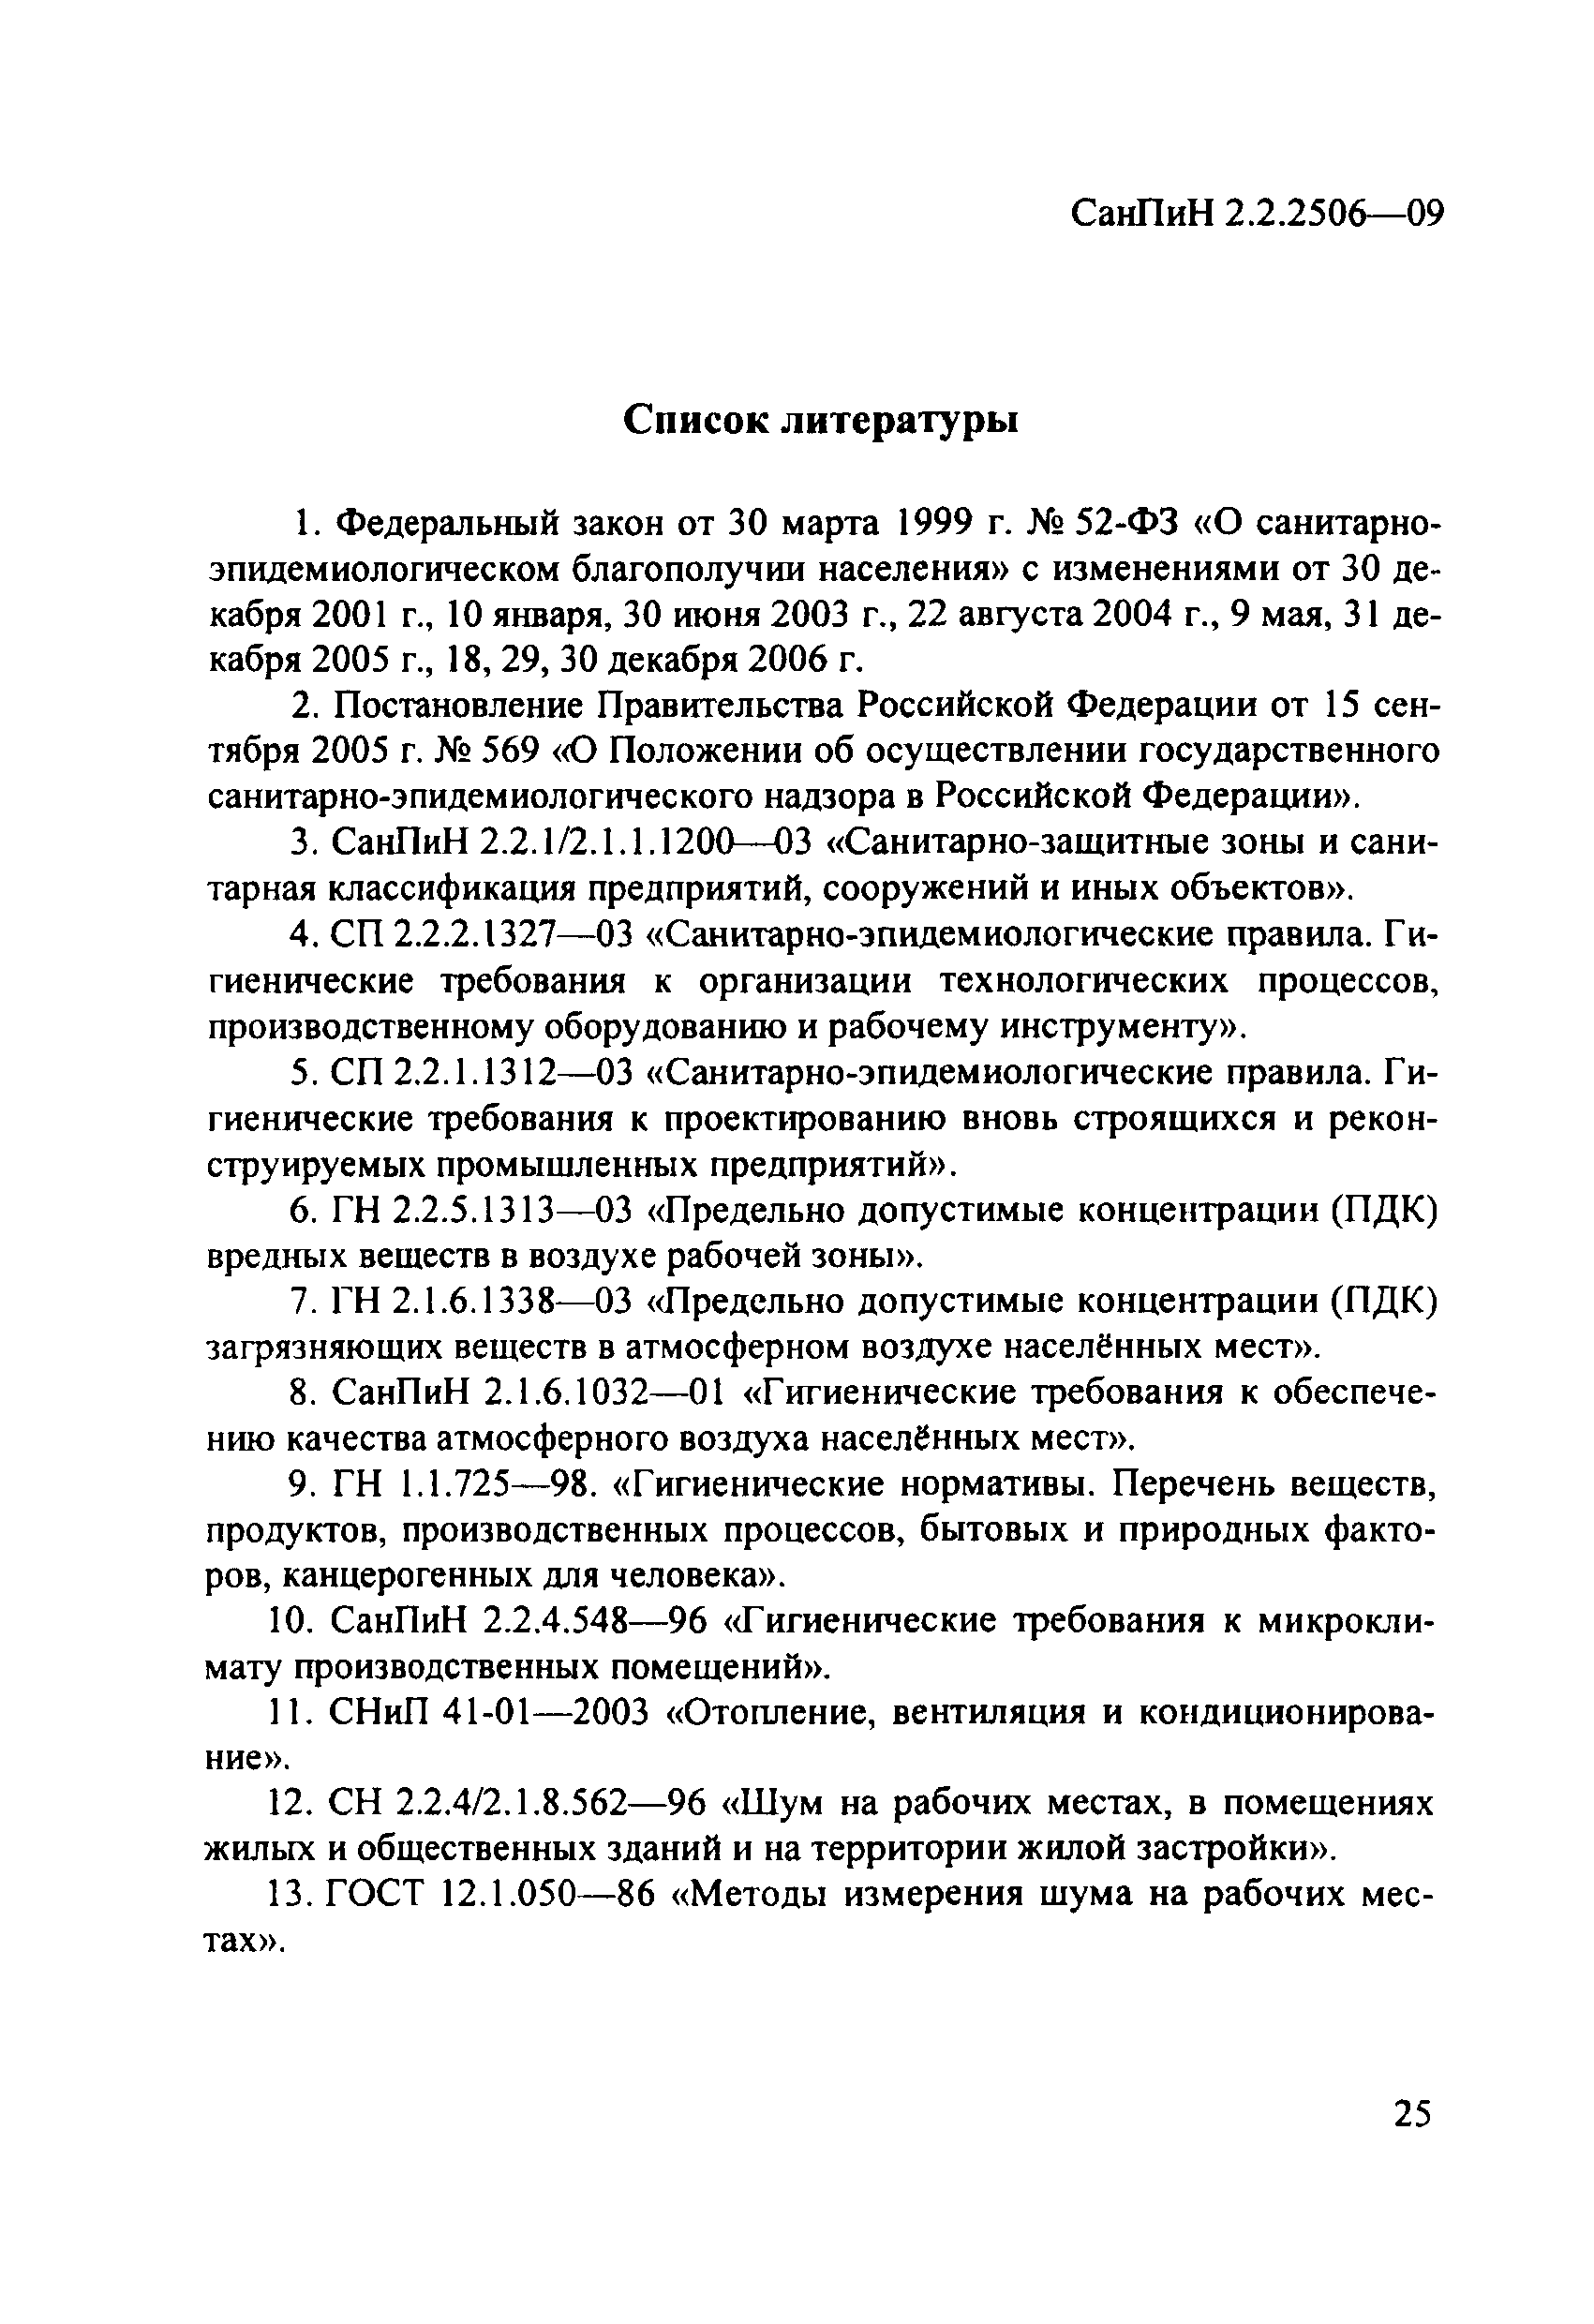 СанПиН 2.2.2506-09